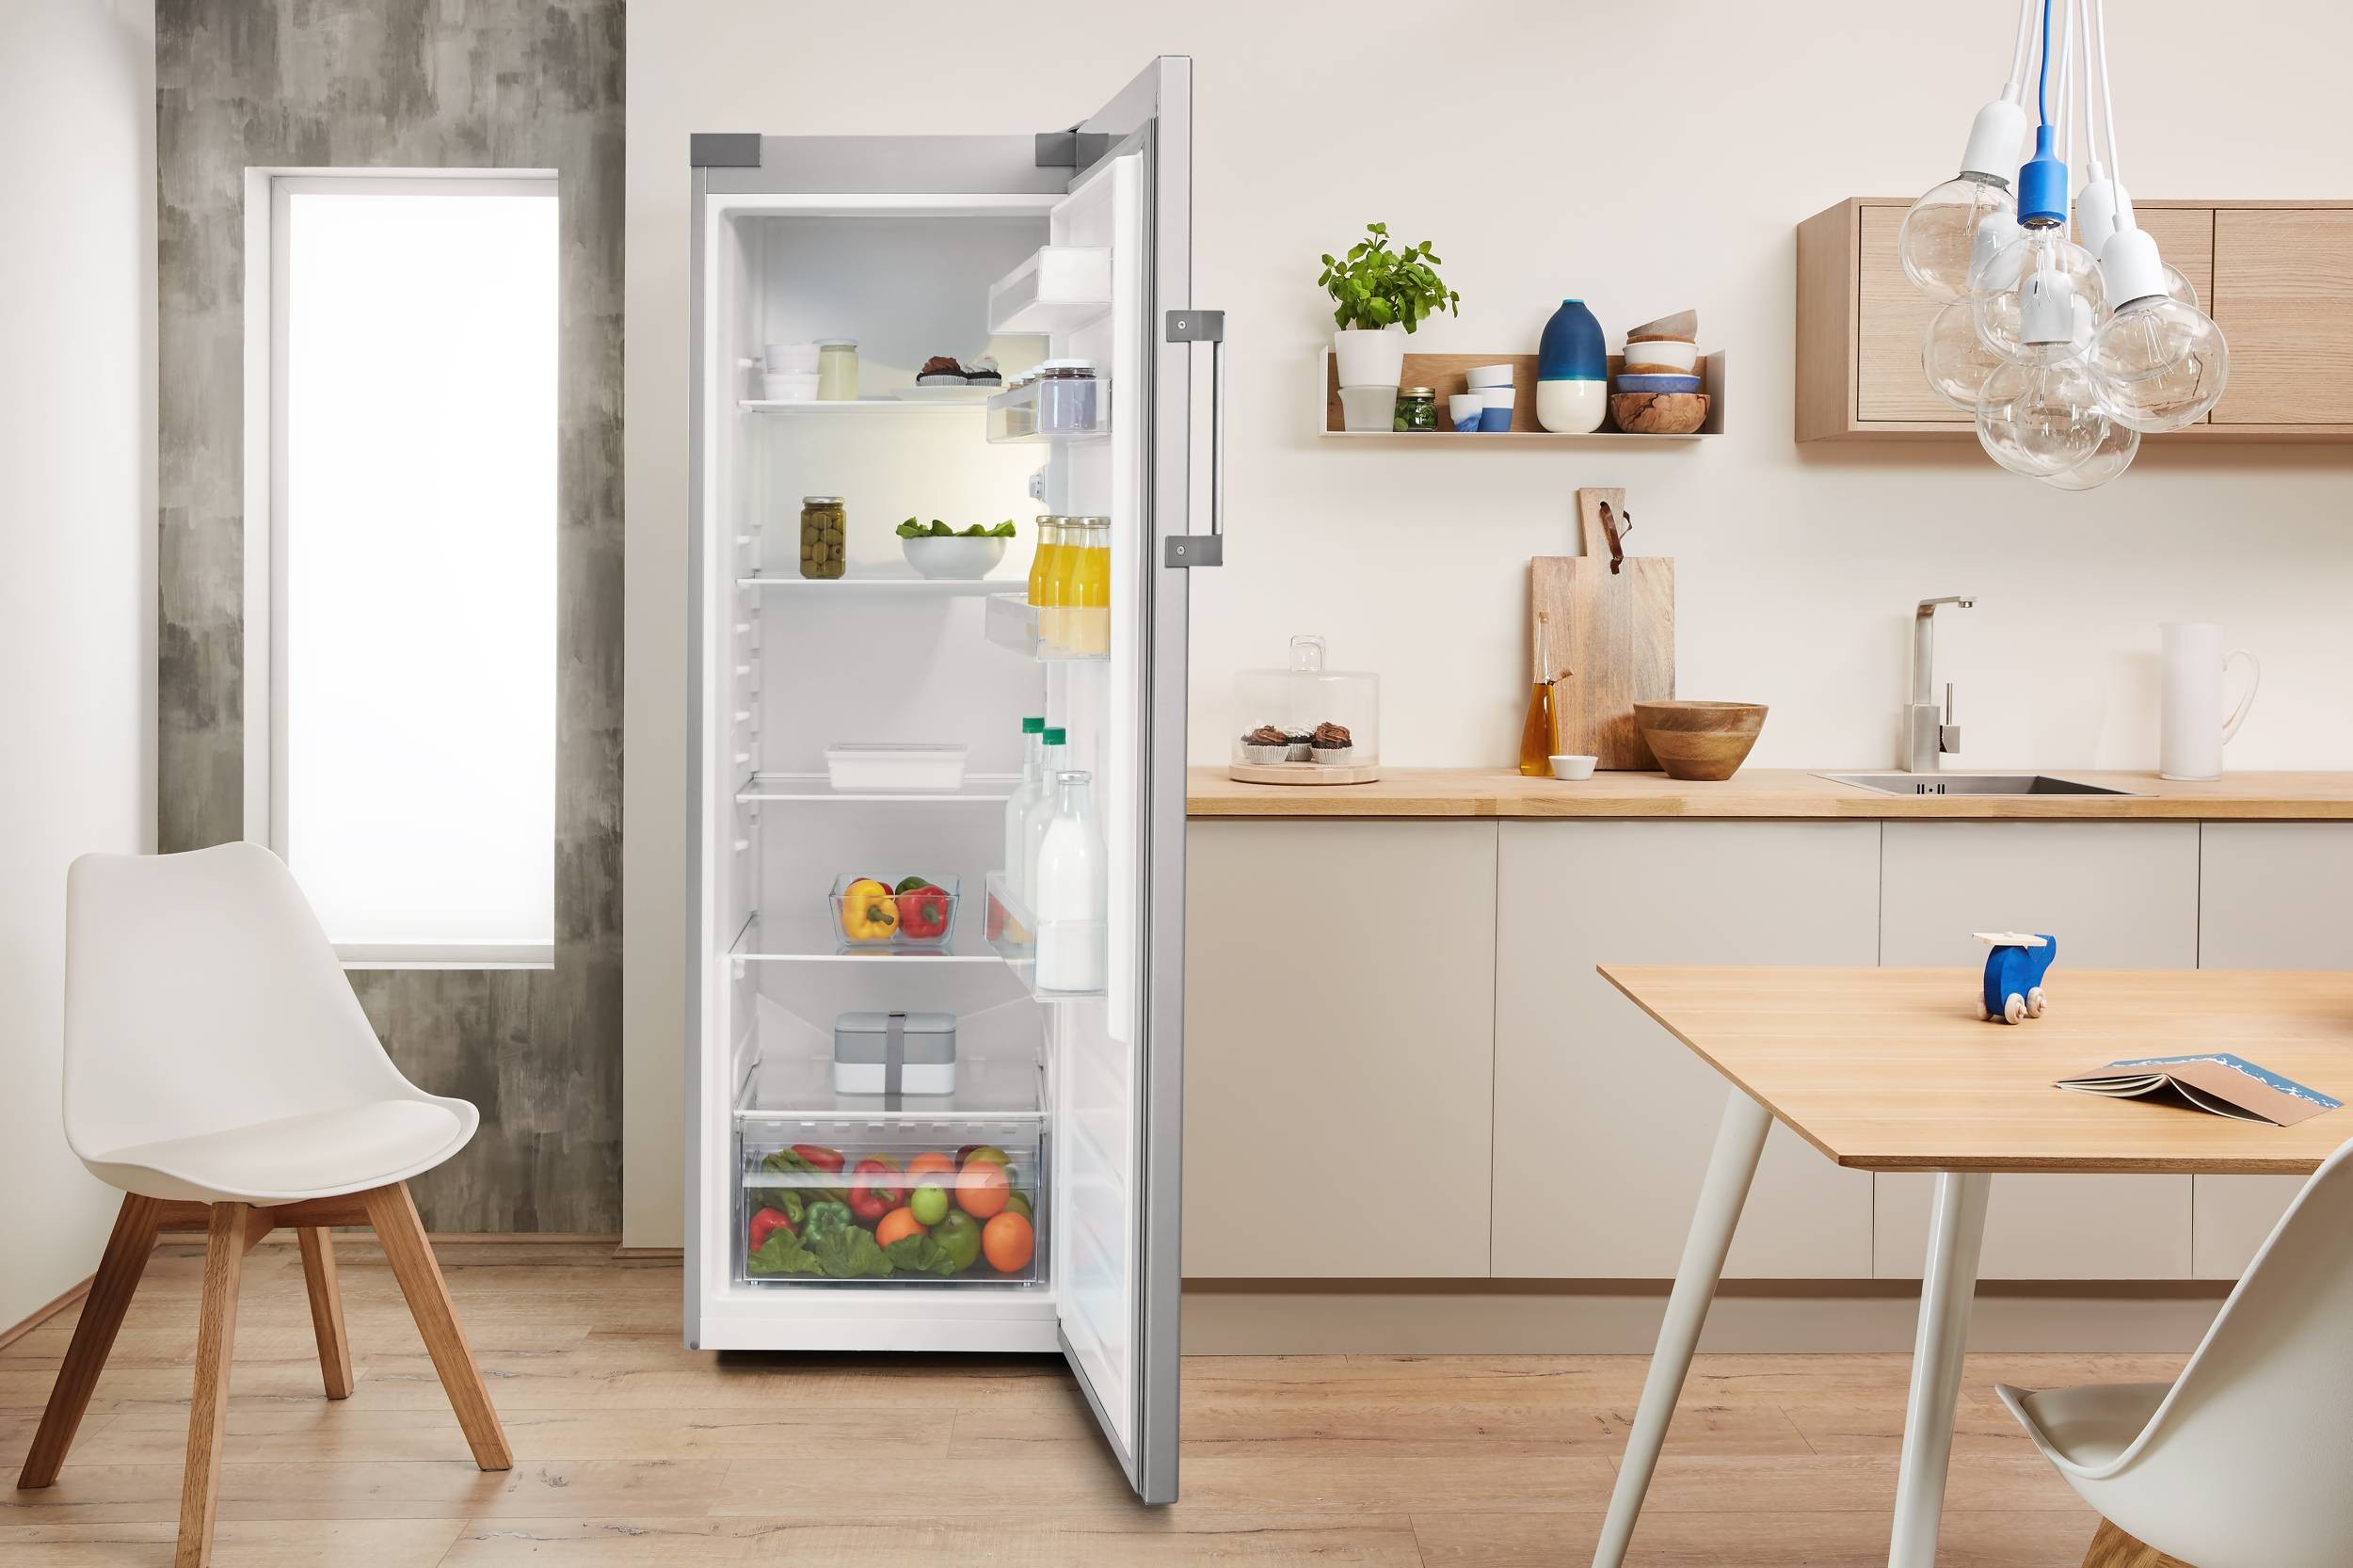 INDESIT Réfrigérateur 1 porte 323 litres Gris - SI62SEUFR